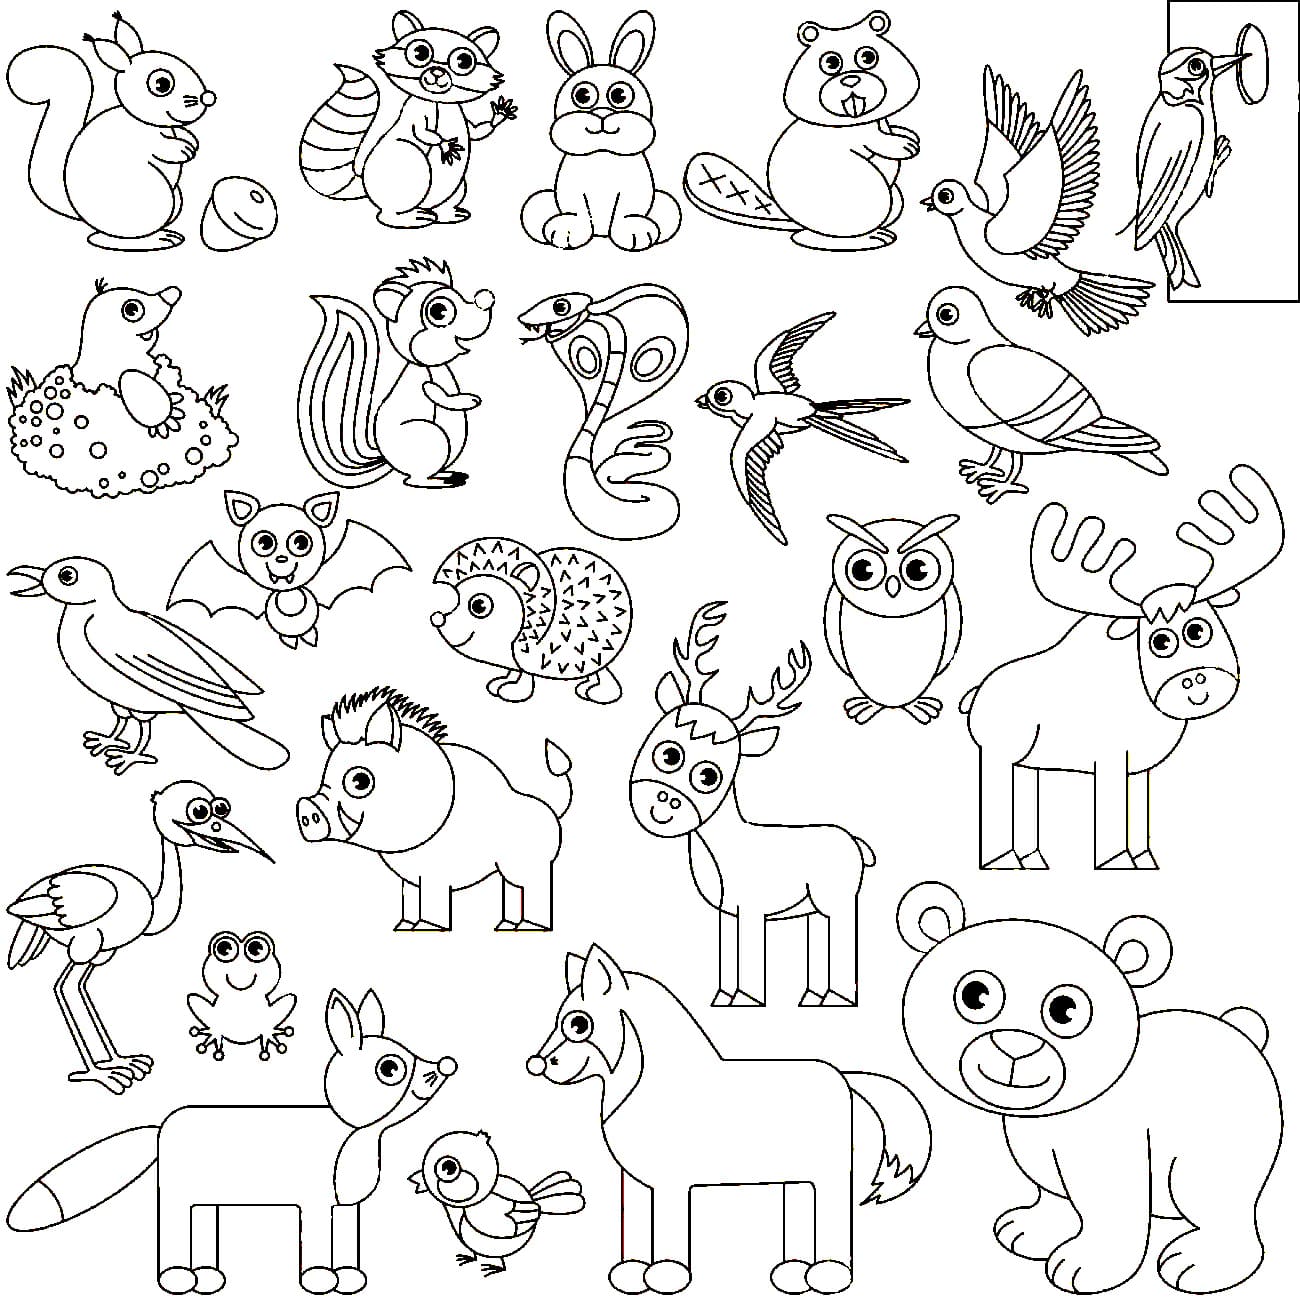 Много раскрасок на 1 листе. Раскраски. Животные. Рисунки животных для детей. Раскраска звери. Картинки для раскрашивания животные.